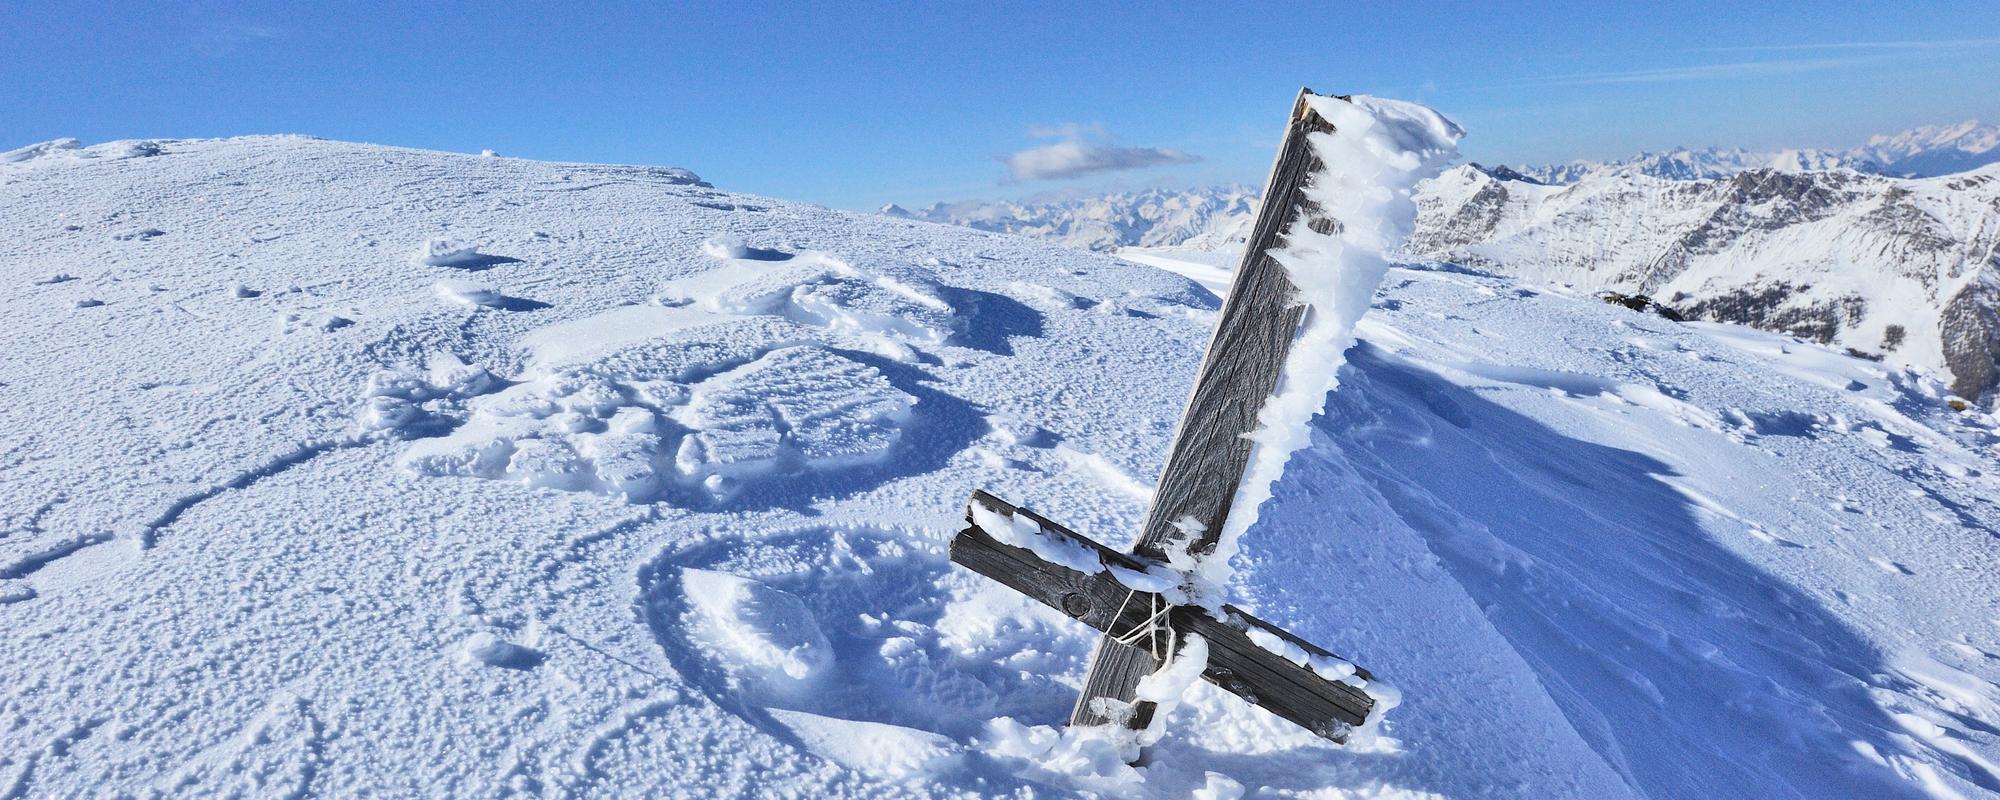 Gipfelkreuz im Schnee